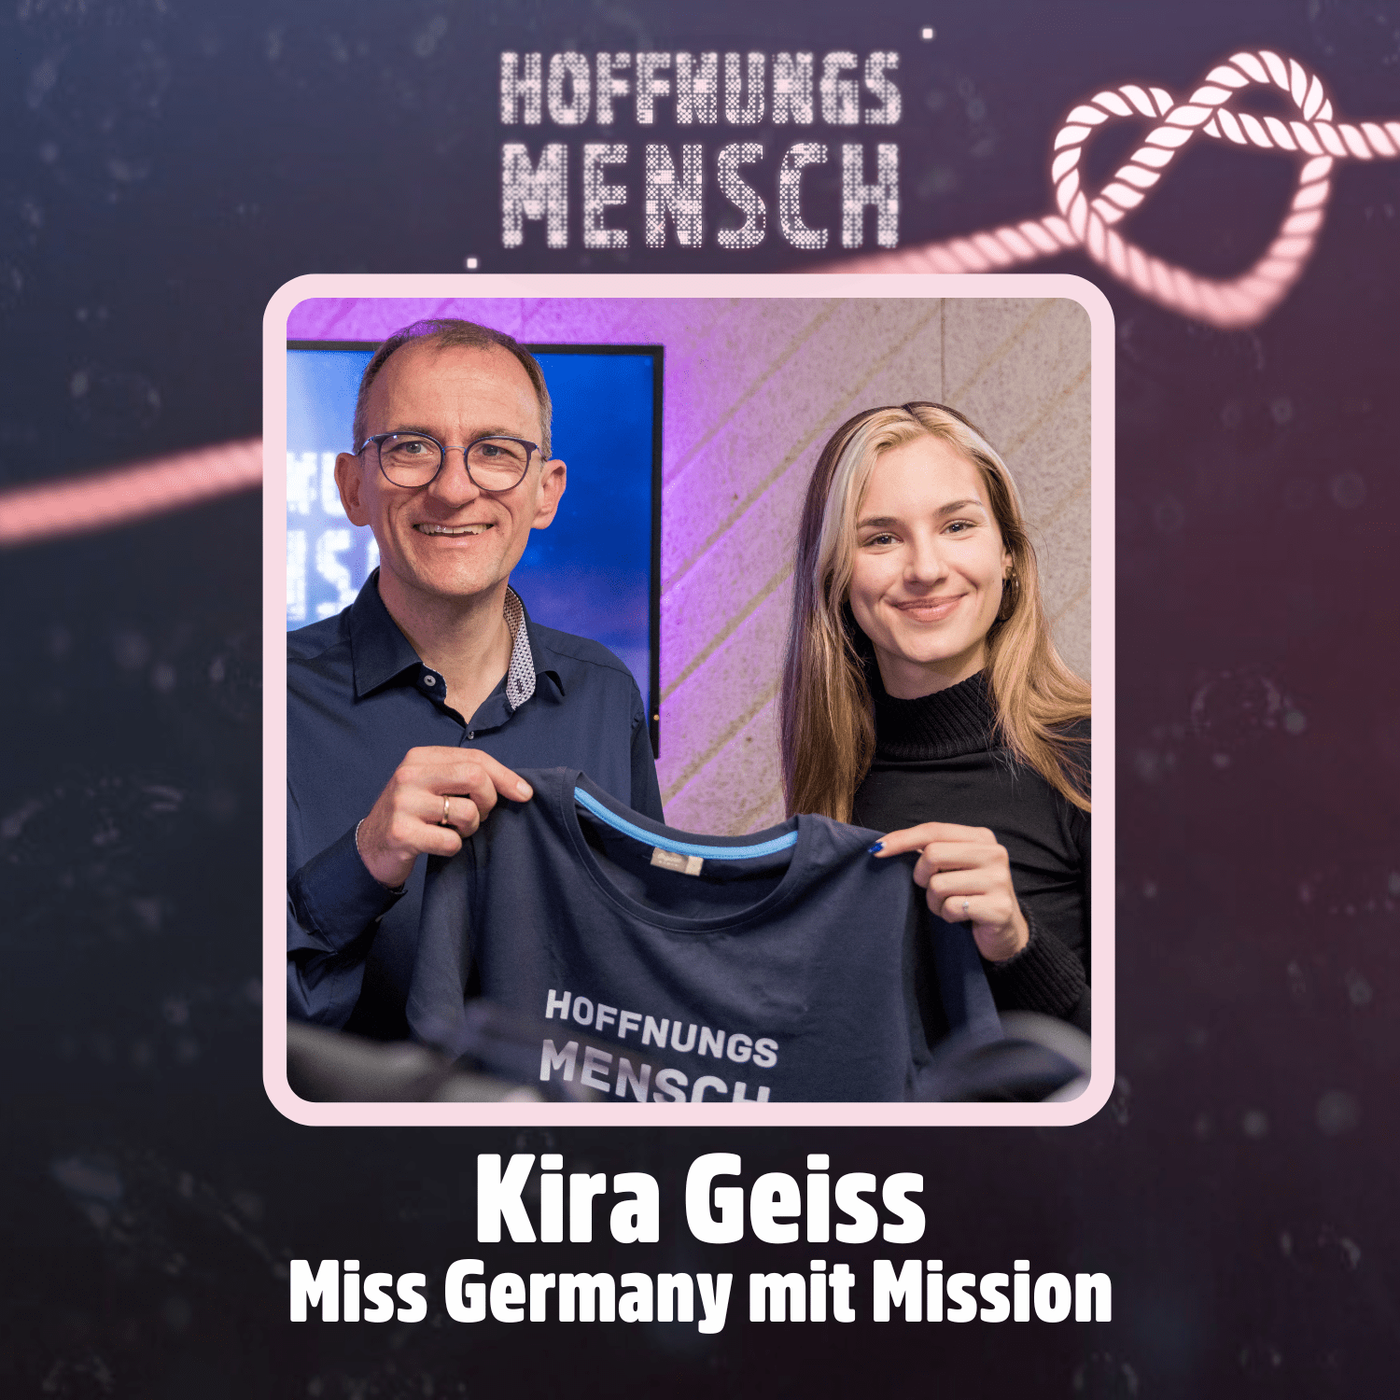 Kira Geiss: Miss Germany mit Mission